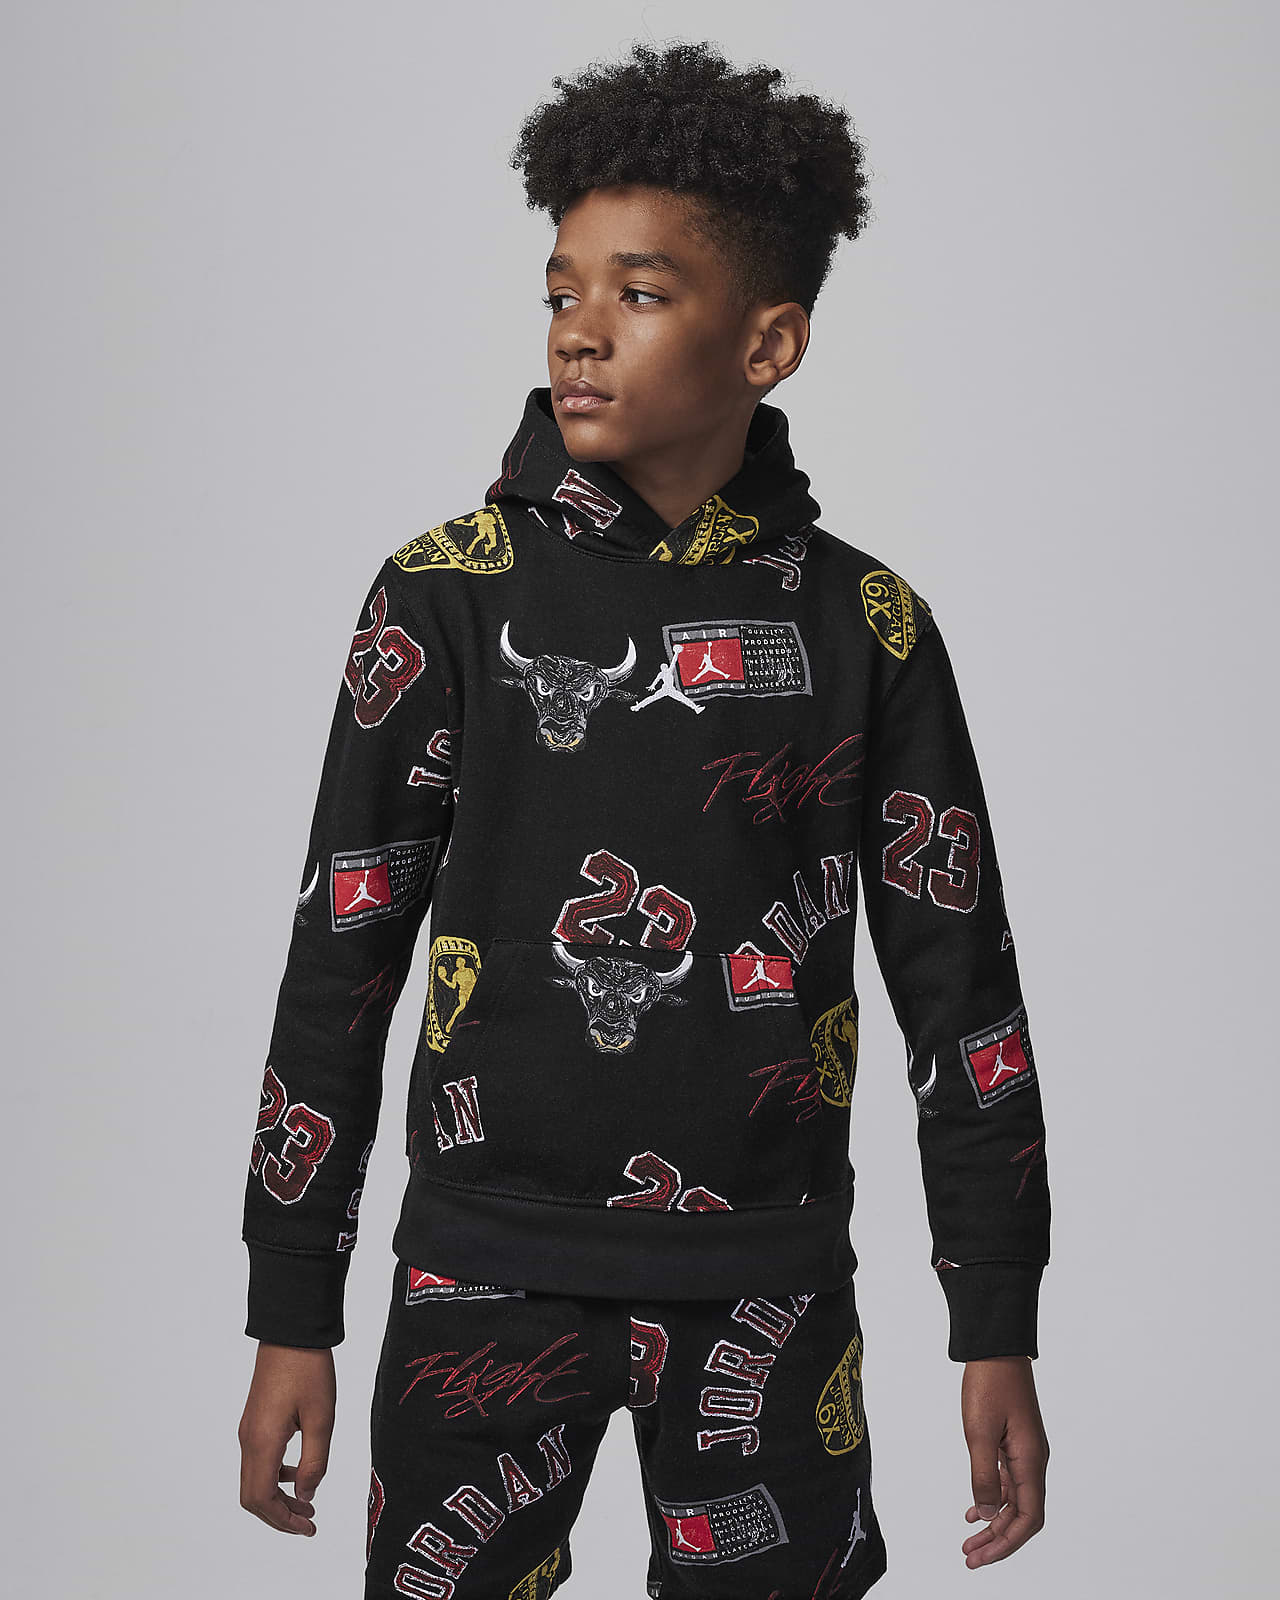 Jordan MJ Essentials Big Kids' Printed Pullover Hoodie